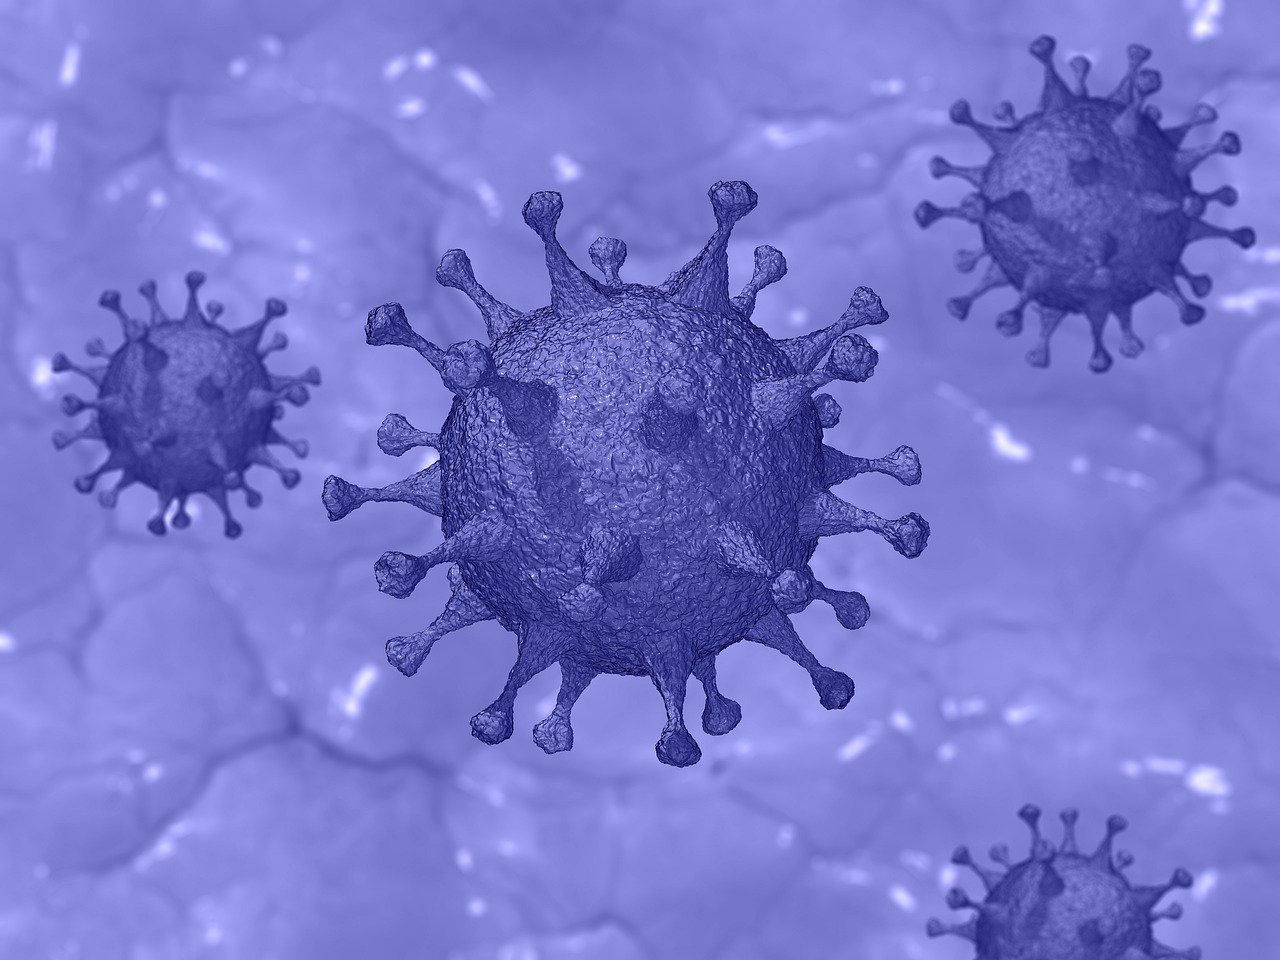 Imagem do coronavírus em tom roxo